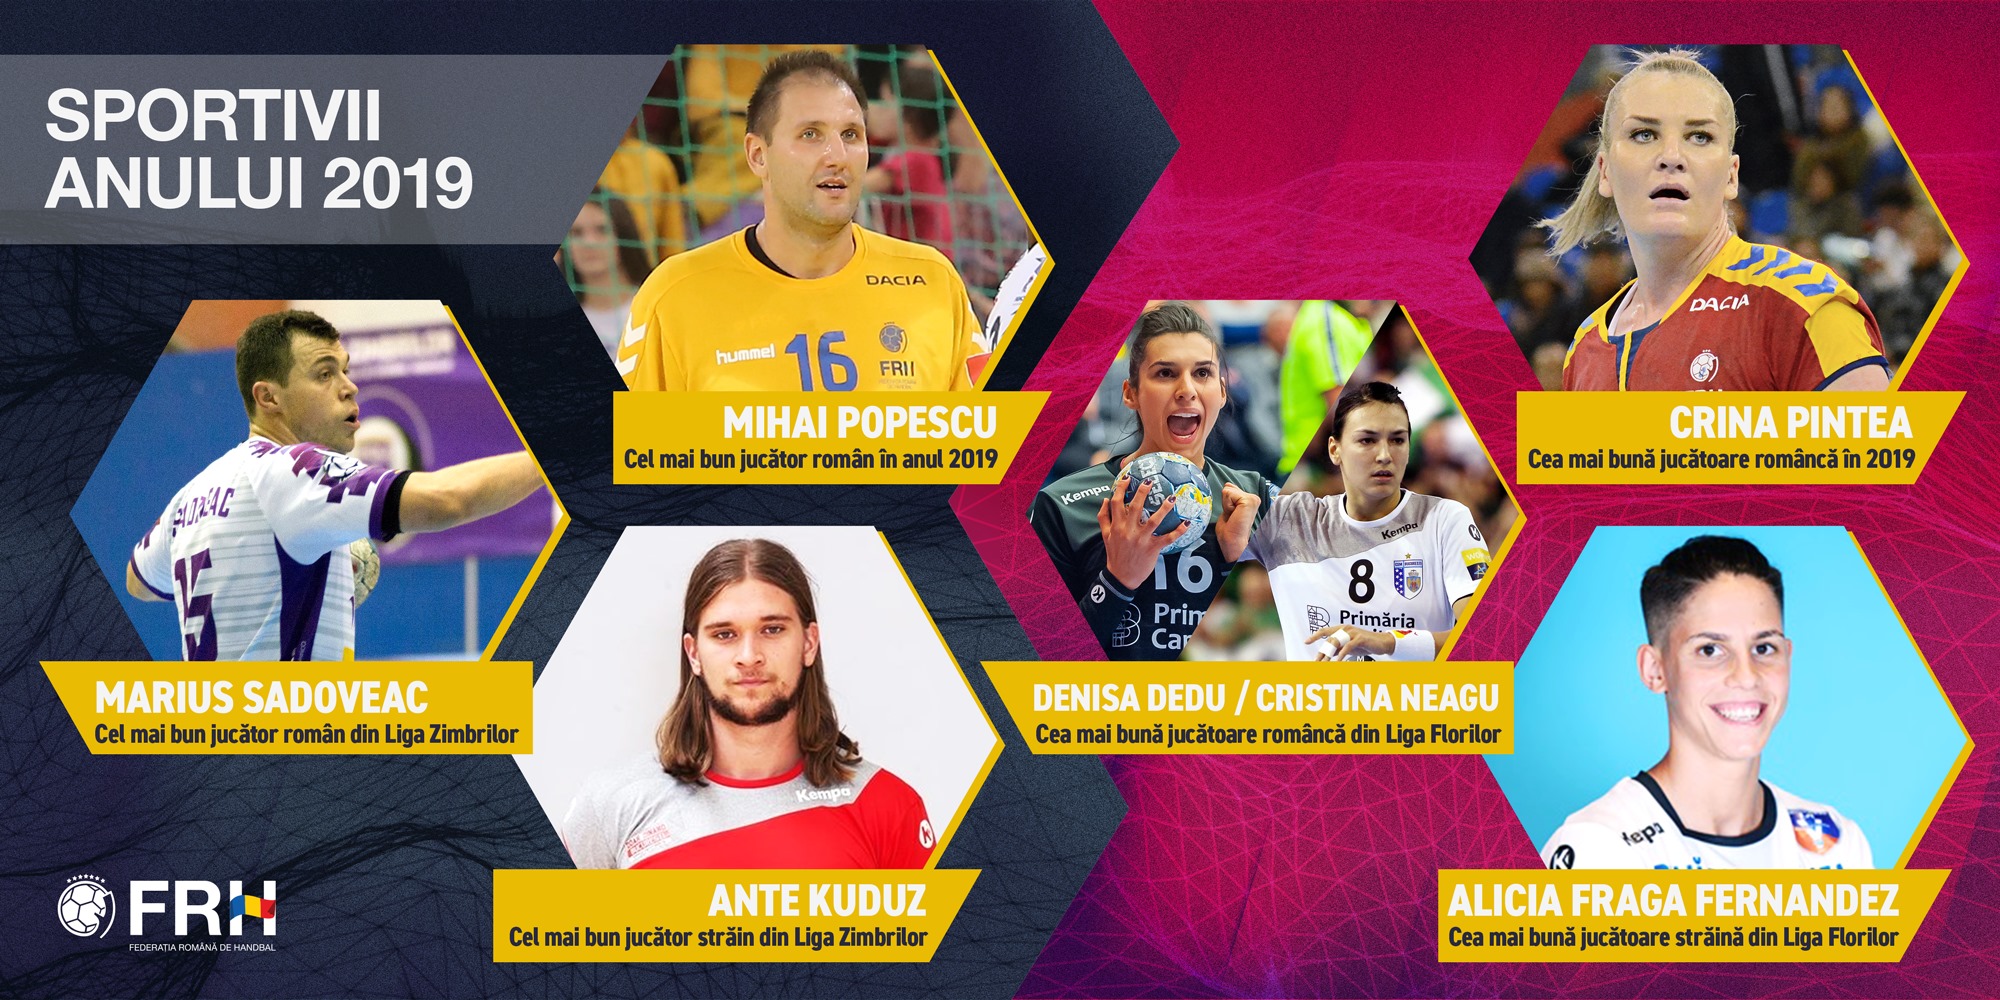 Ei sunt laureații anului 2019 handbalului românesc! Crina Pintea și Mihai Popescu, cei mai buni handbaliști din România